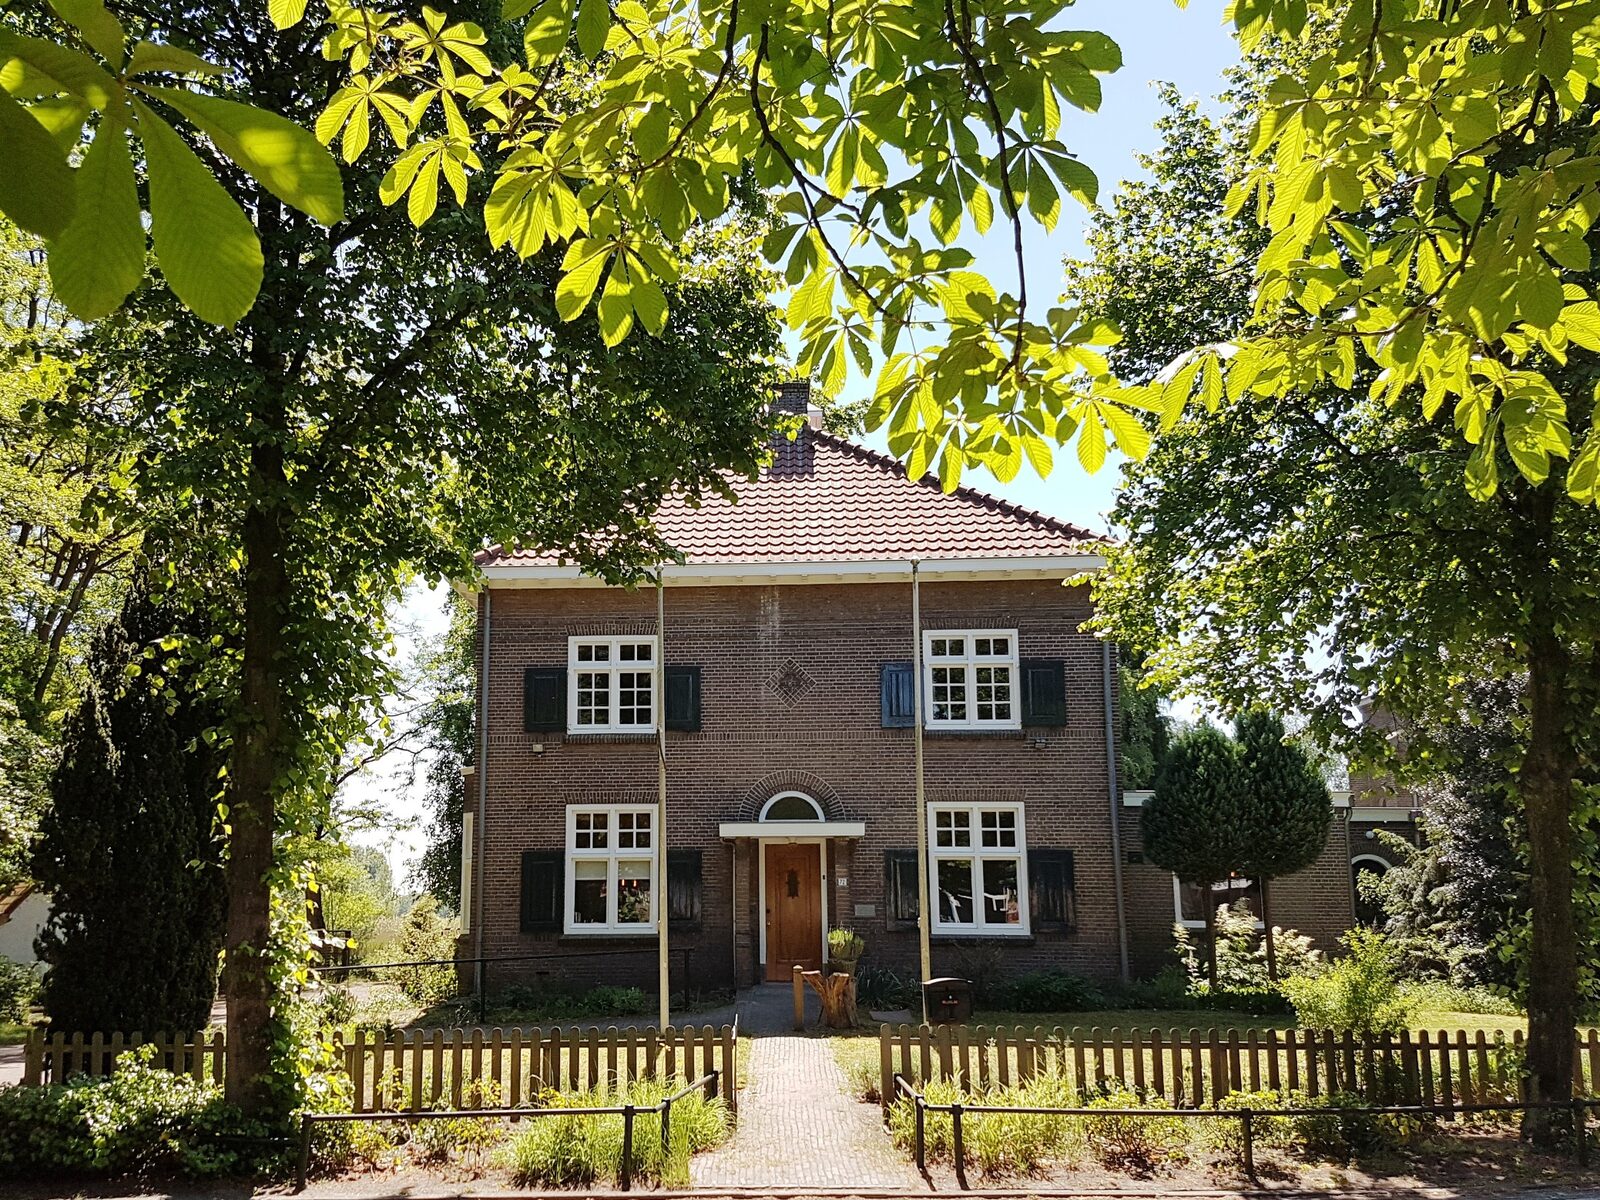 Vakantiehuis de Pastoorswoning in Brabant, vanuit huis kun je het Dommelpad lopen